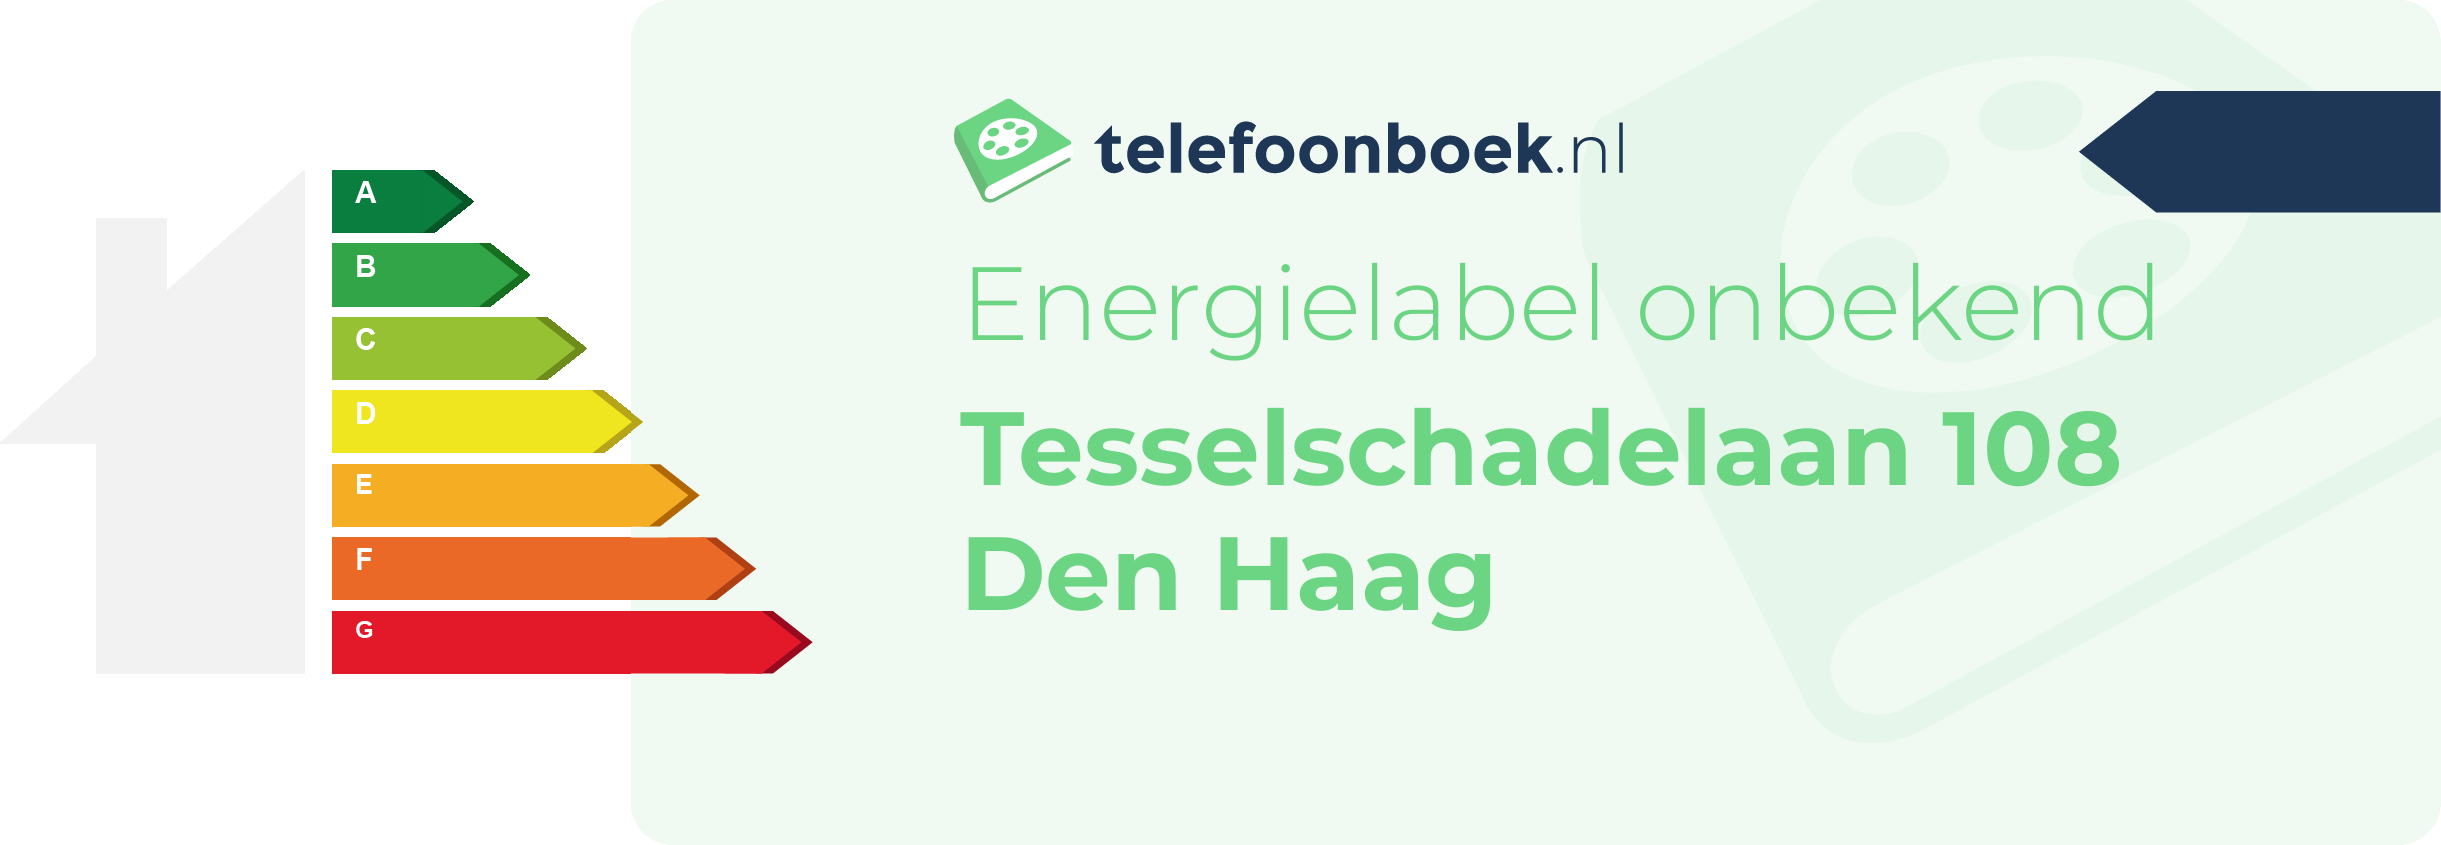 Energielabel Tesselschadelaan 108 Den Haag